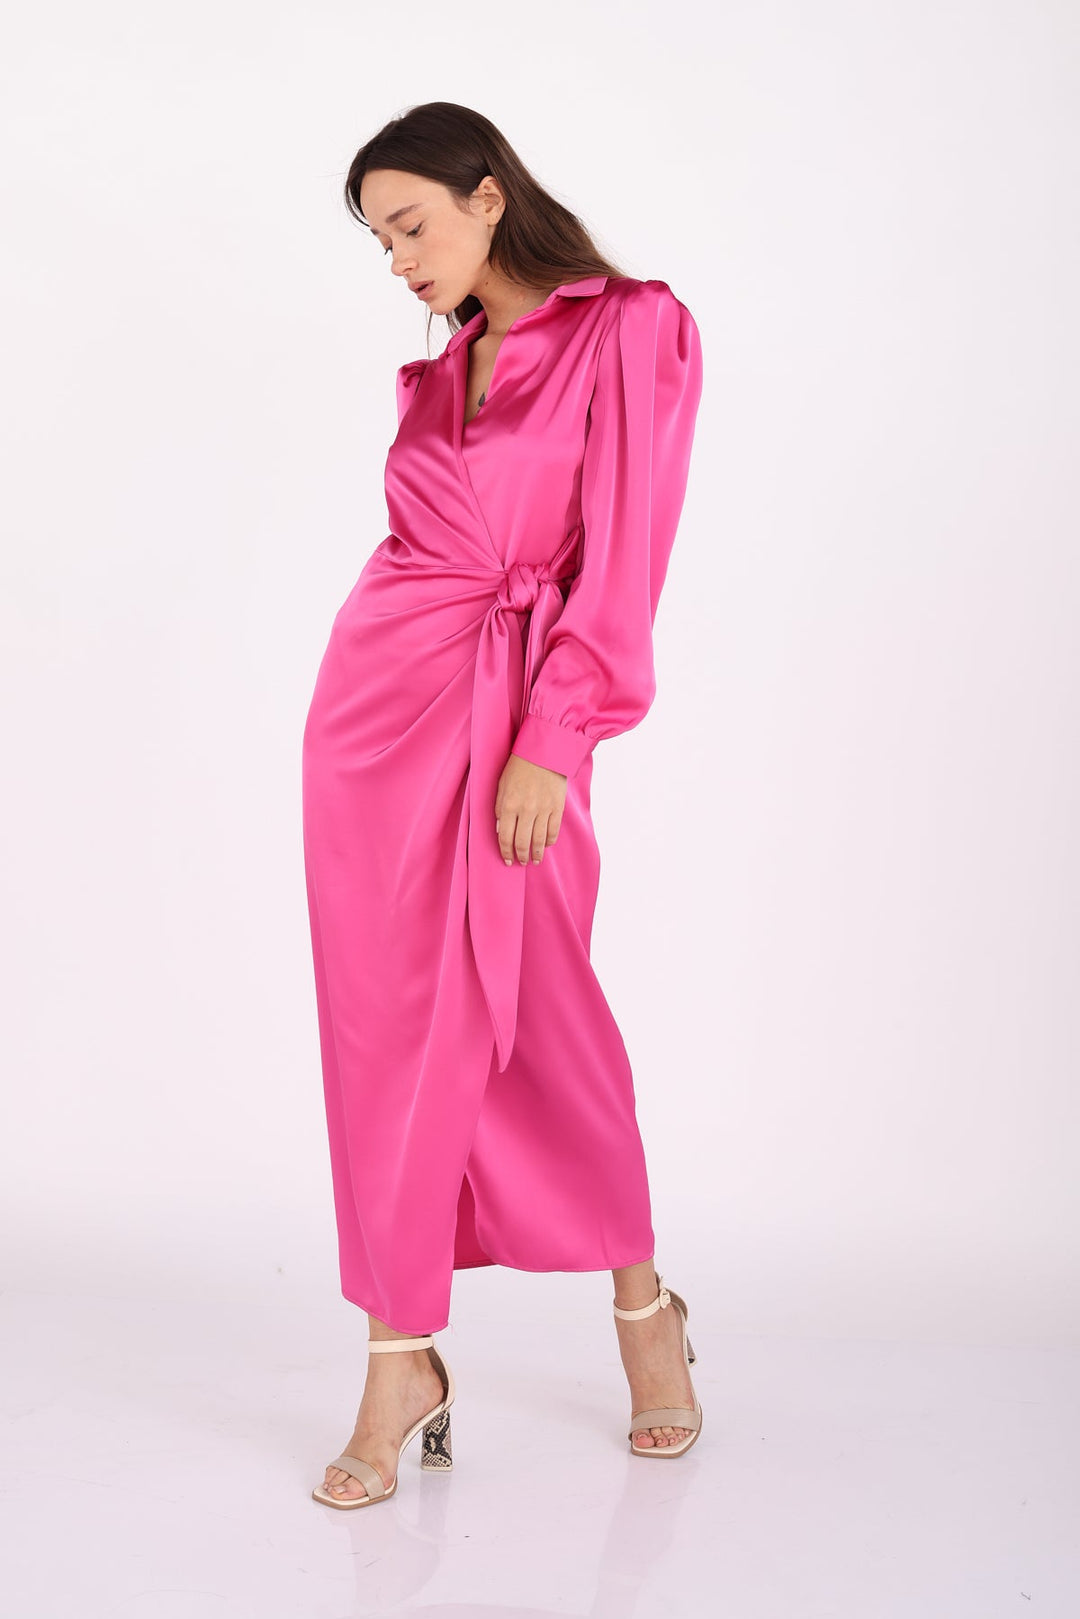 שמלת אלאניס בצבע ורוד פוקסיה - Dana Sidi